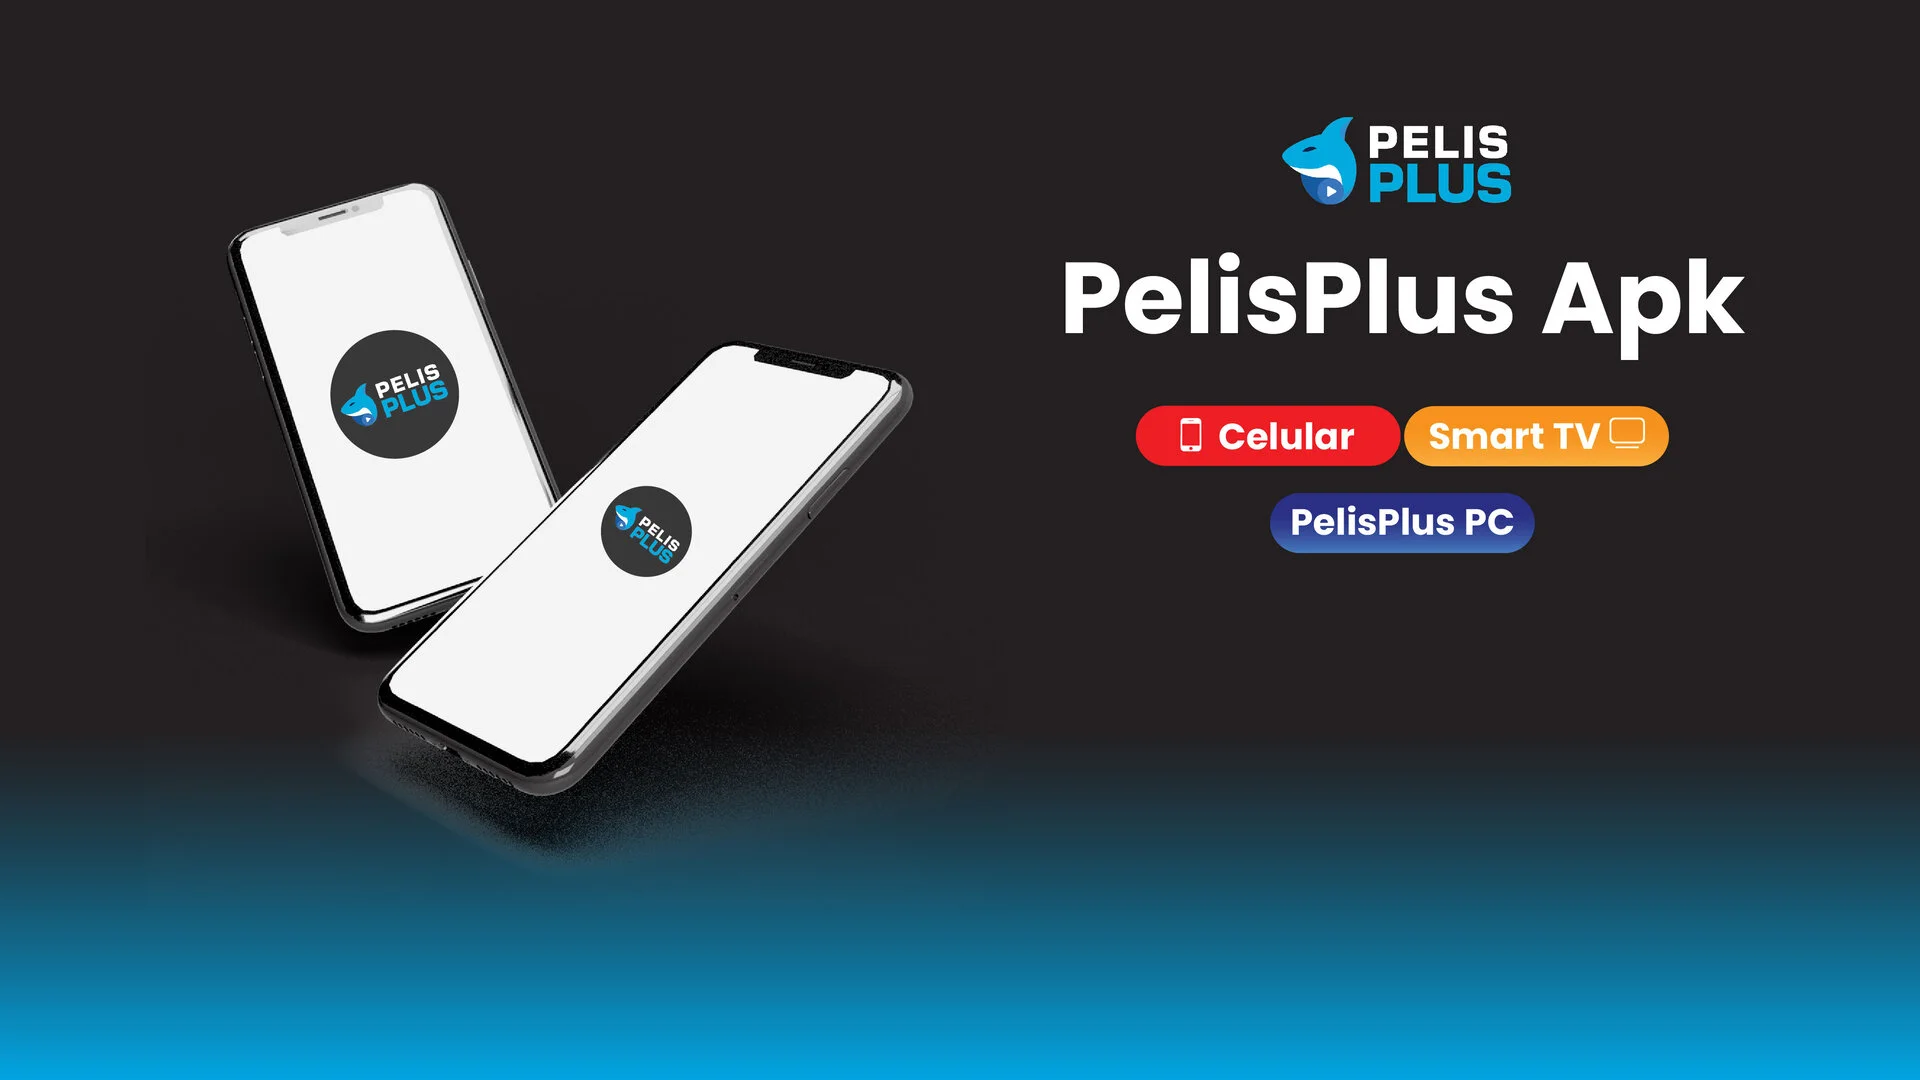 Pelisplus APK